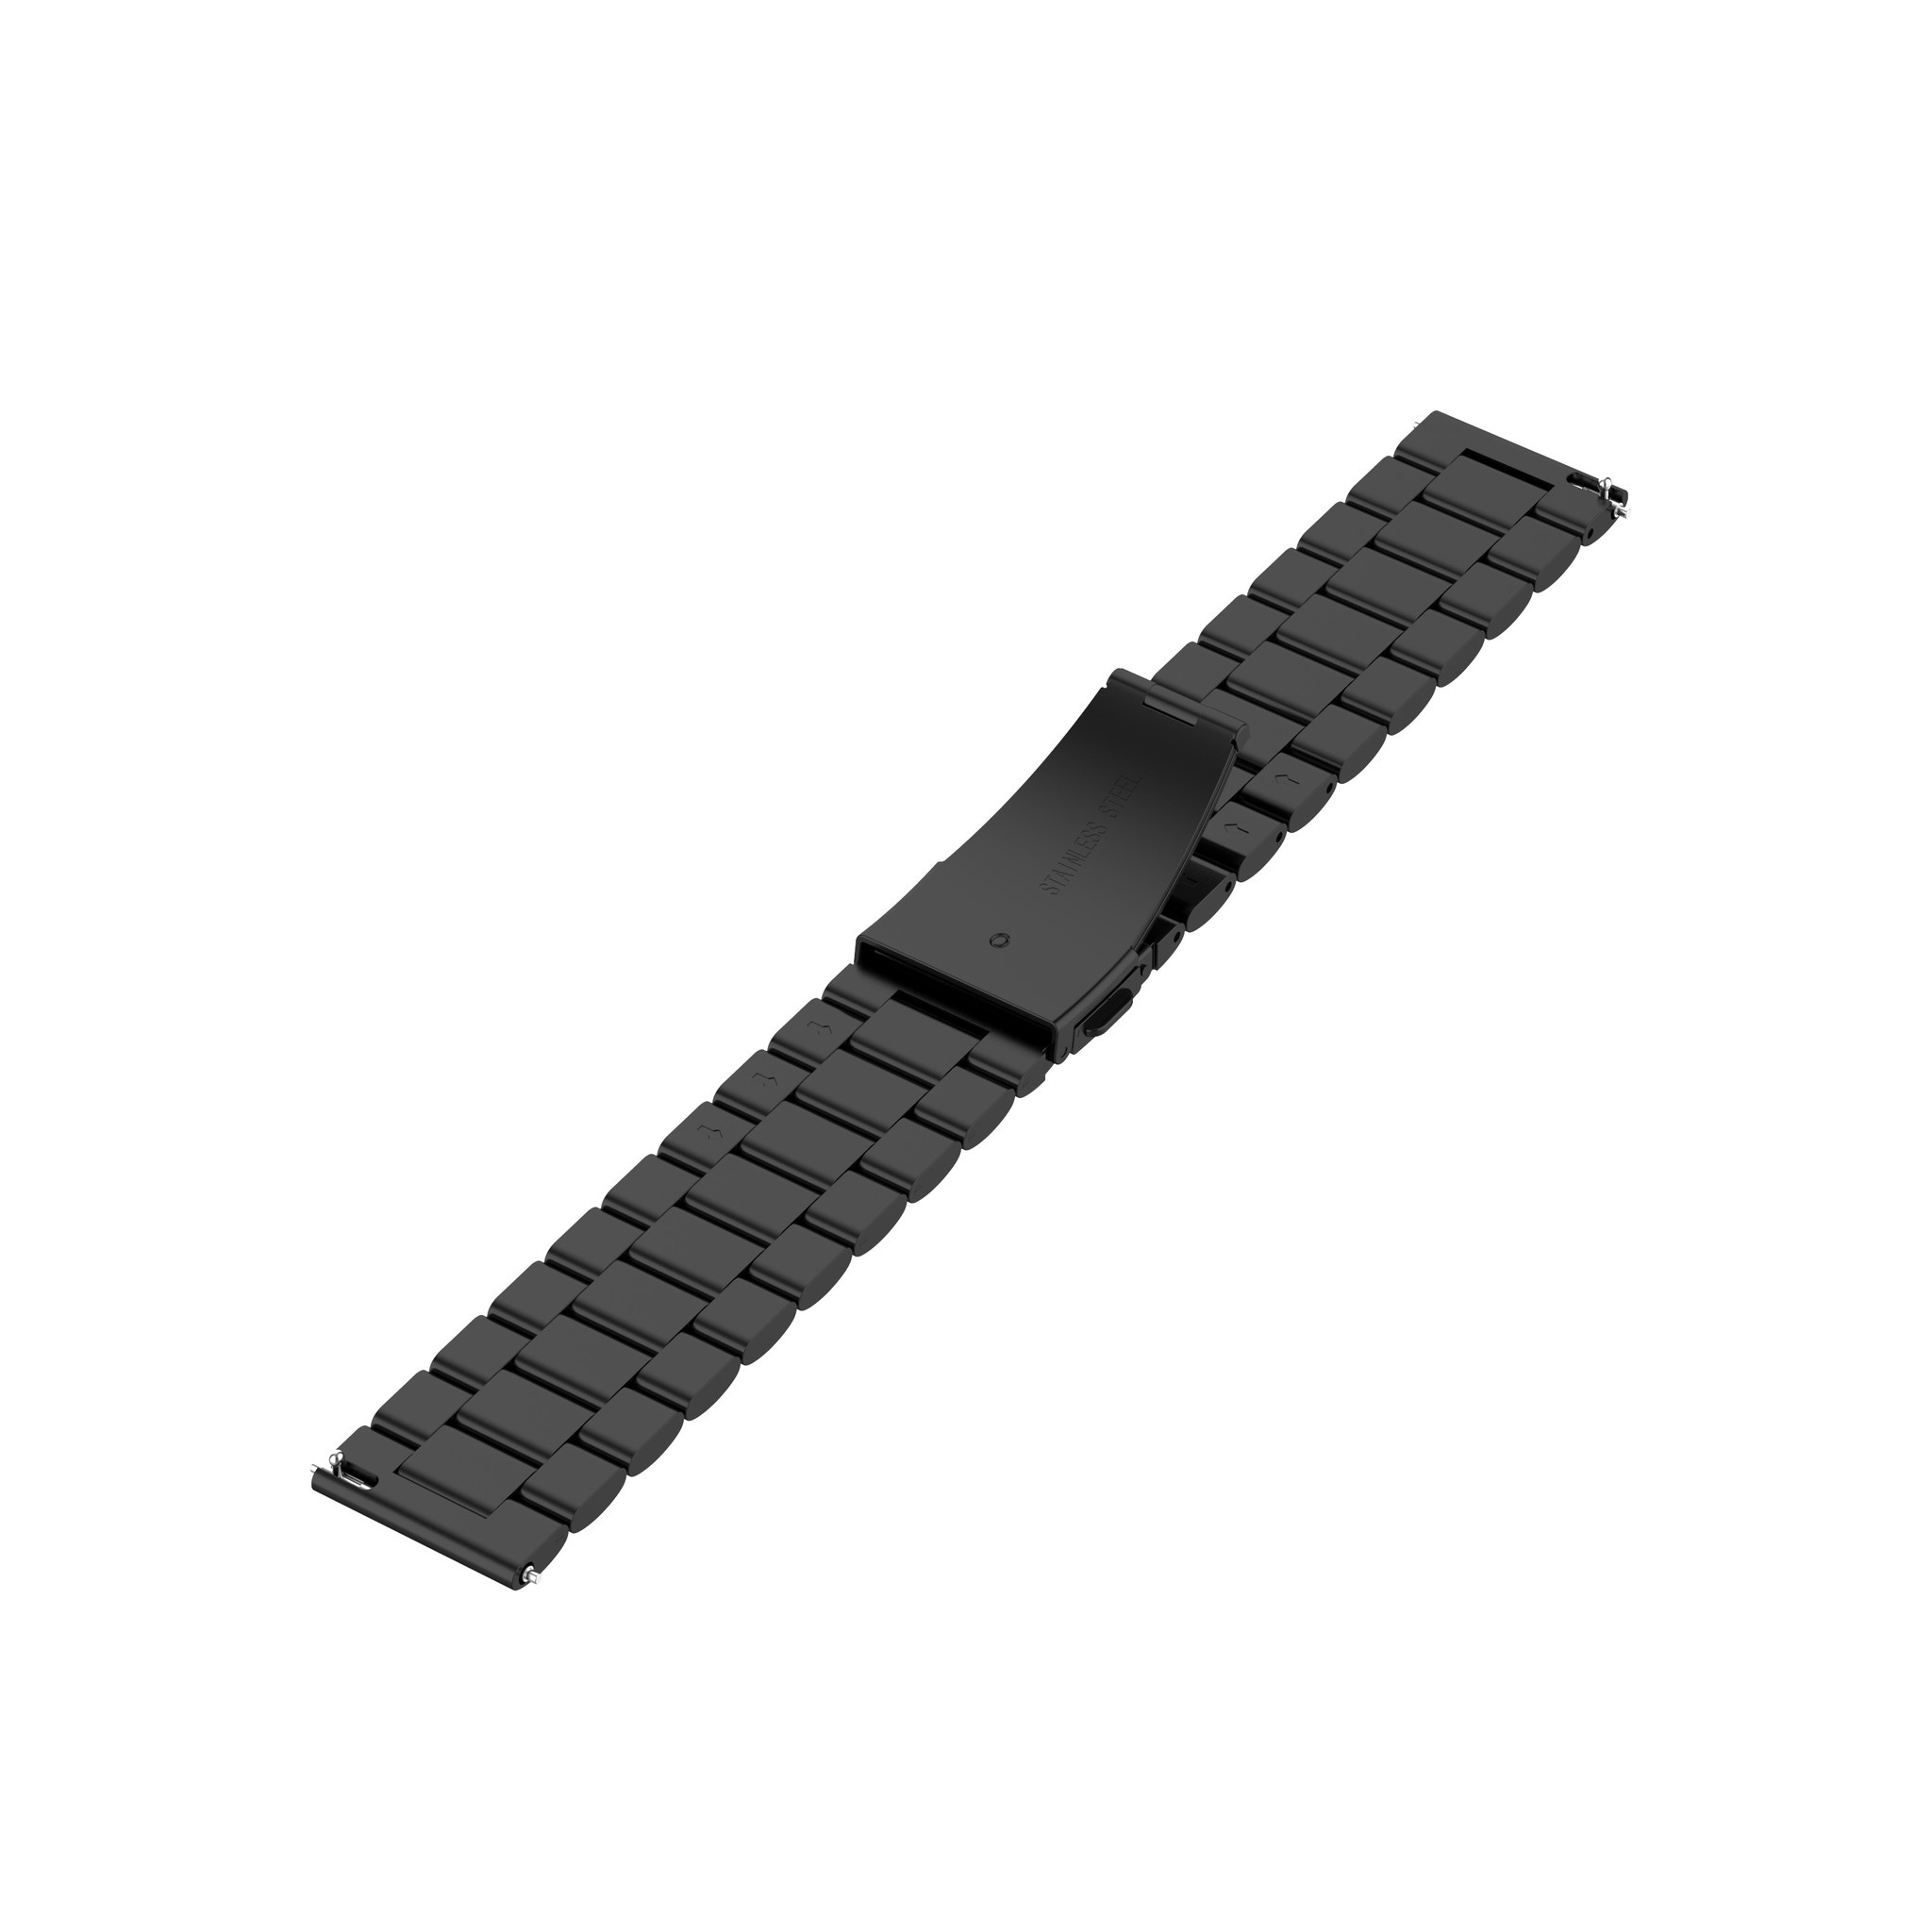 Cinturino a maglie in acciaio con perline per Samsung Galaxy Watch - nero